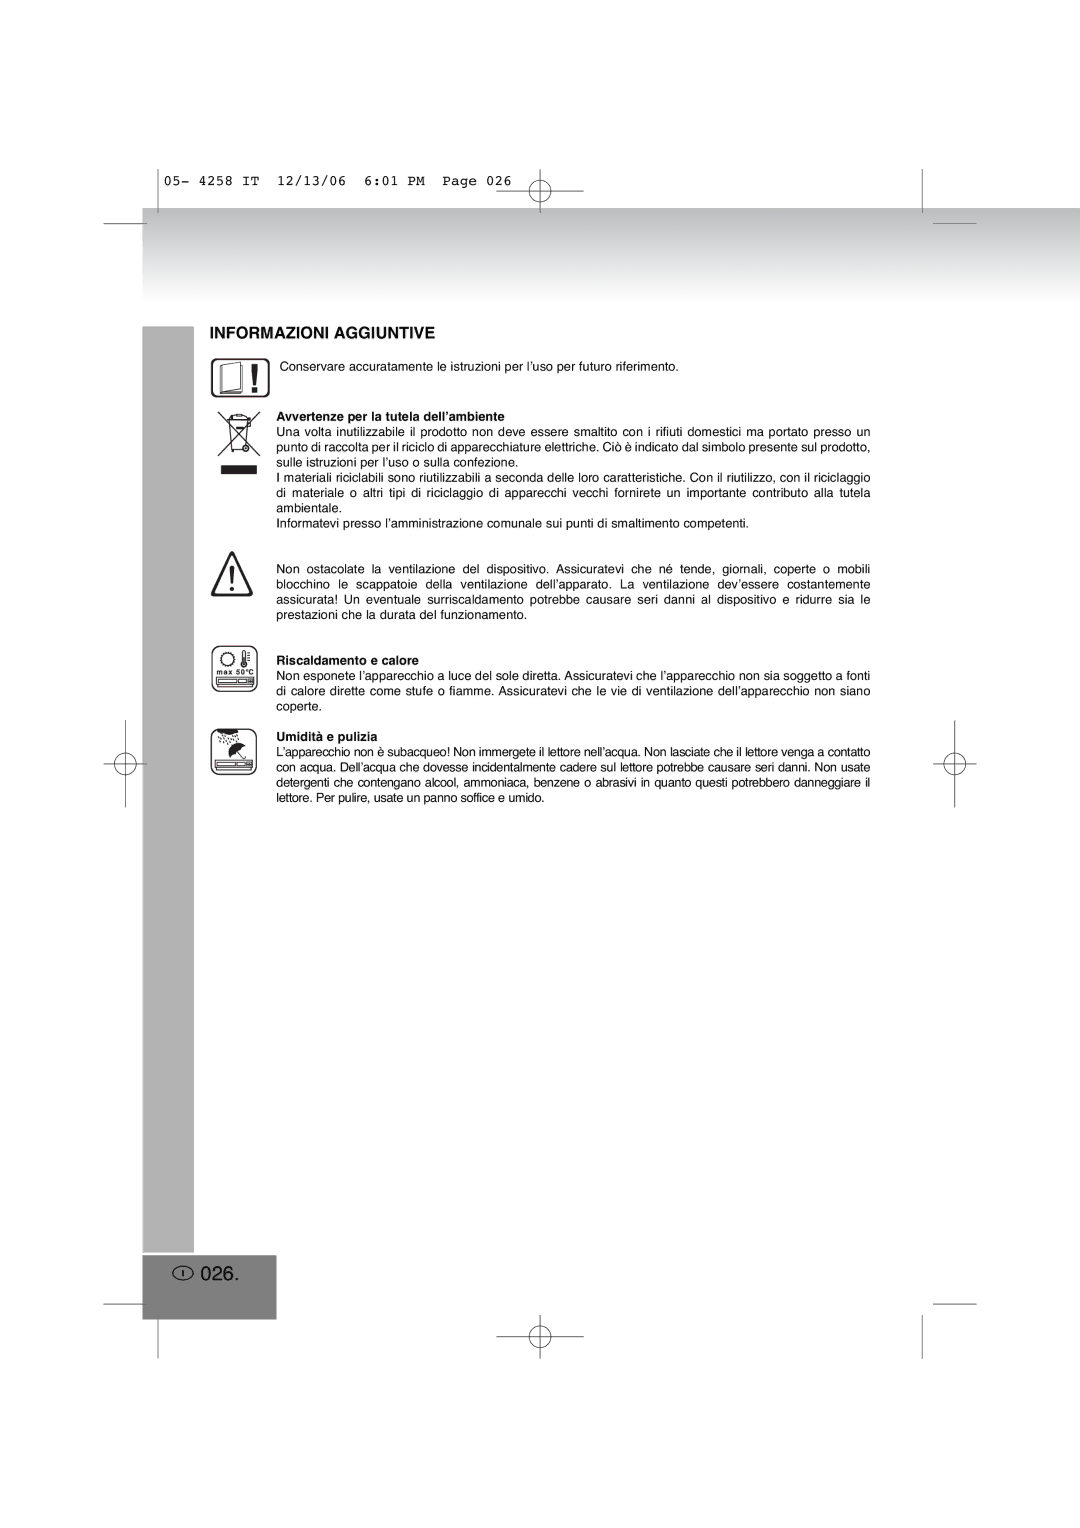 Elta 4258MP3 manual 026, Avvertenze per la tutela dell’ambiente, Riscaldamento e calore, Umidità e pulizia 